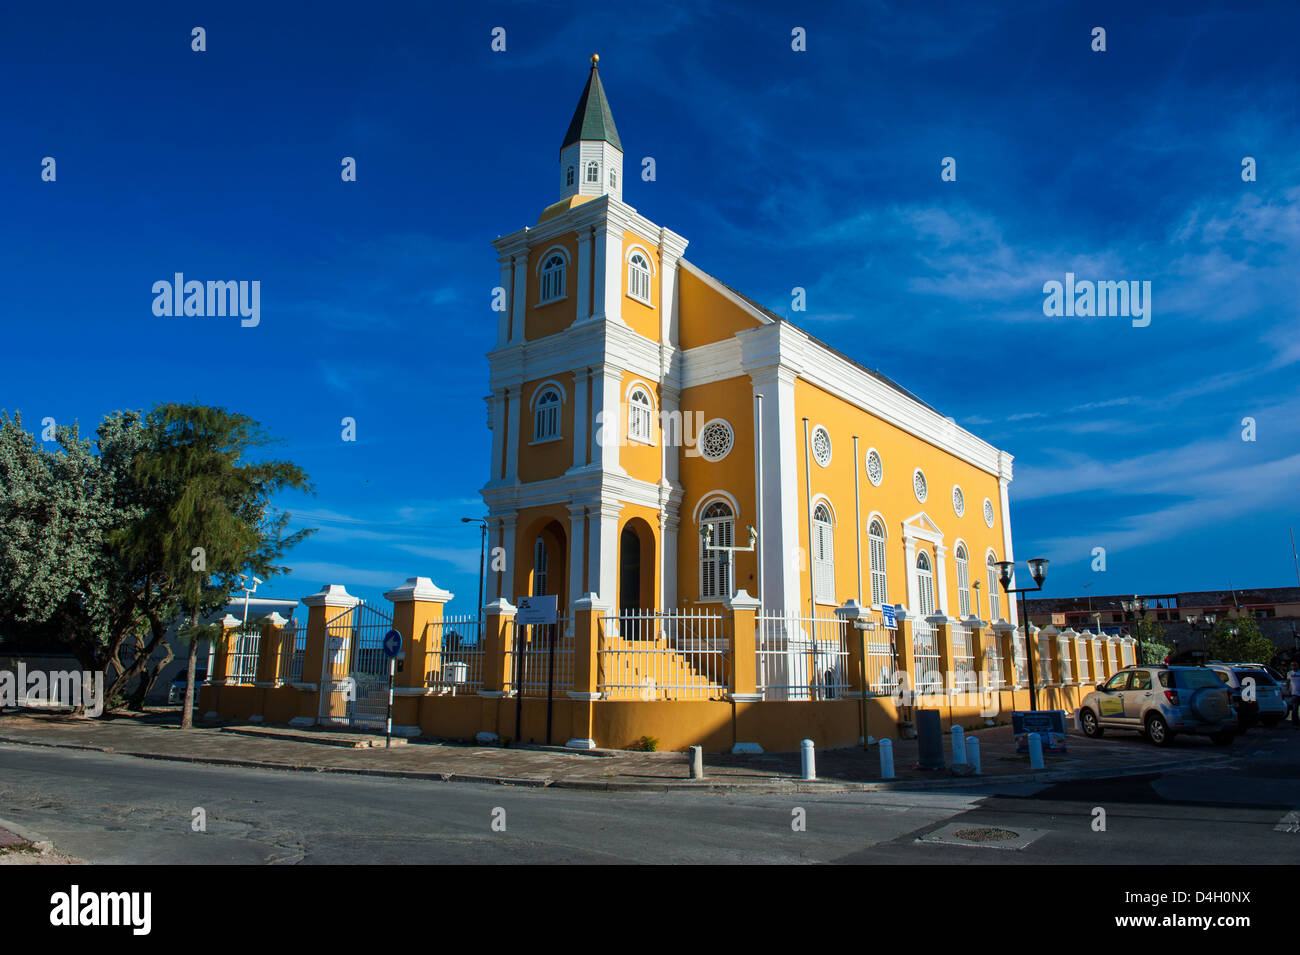 Église de Willemstad, capitale de Curaçao, Îles ABC, Netherlands Antilles, Caraïbes Banque D'Images